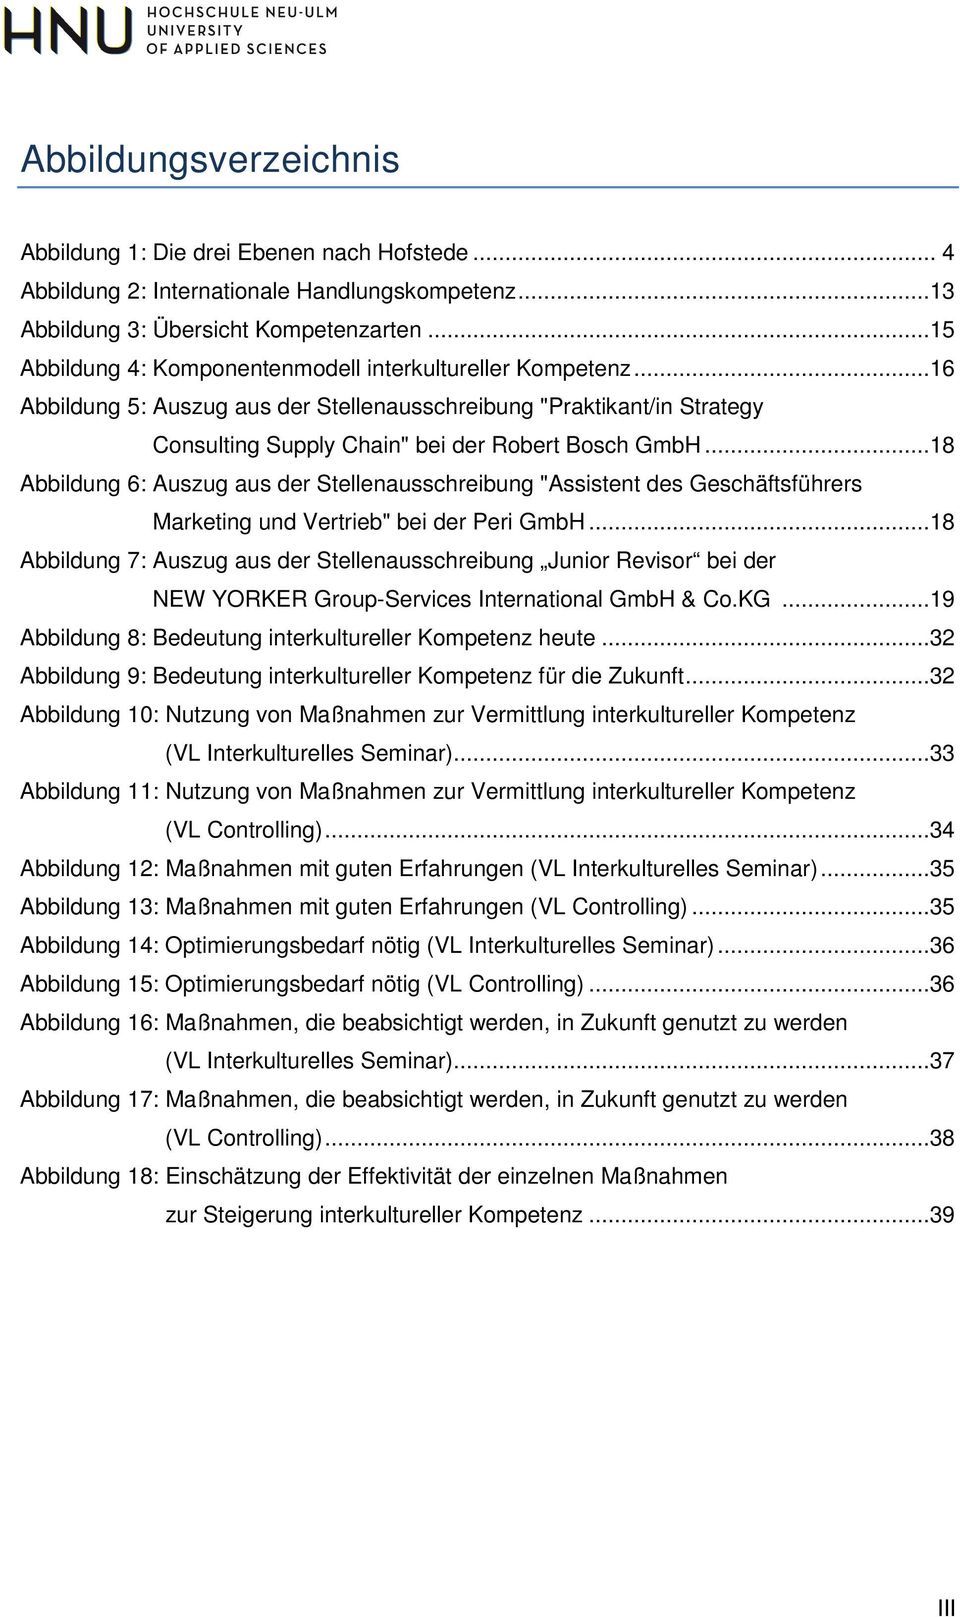 ..18 Abbildung 6: Auszug aus der Stellenausschreibung "Assistent des Geschäftsführers Marketing und Vertrieb" bei der Peri GmbH.